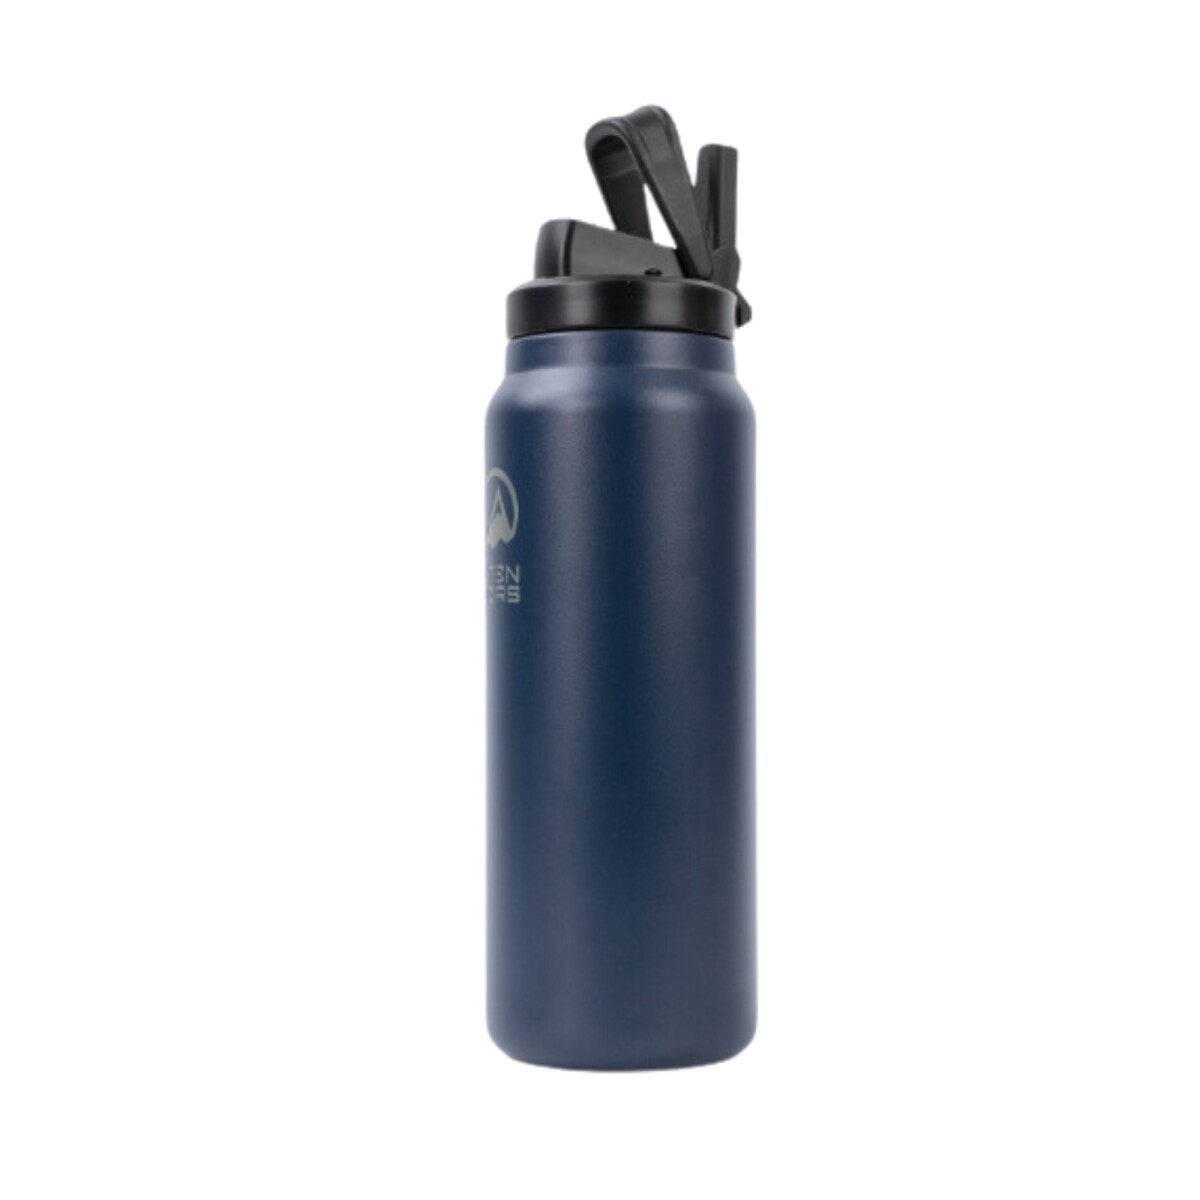 Botellon Utendors 950ml con bota de silicona - Azul Marino 